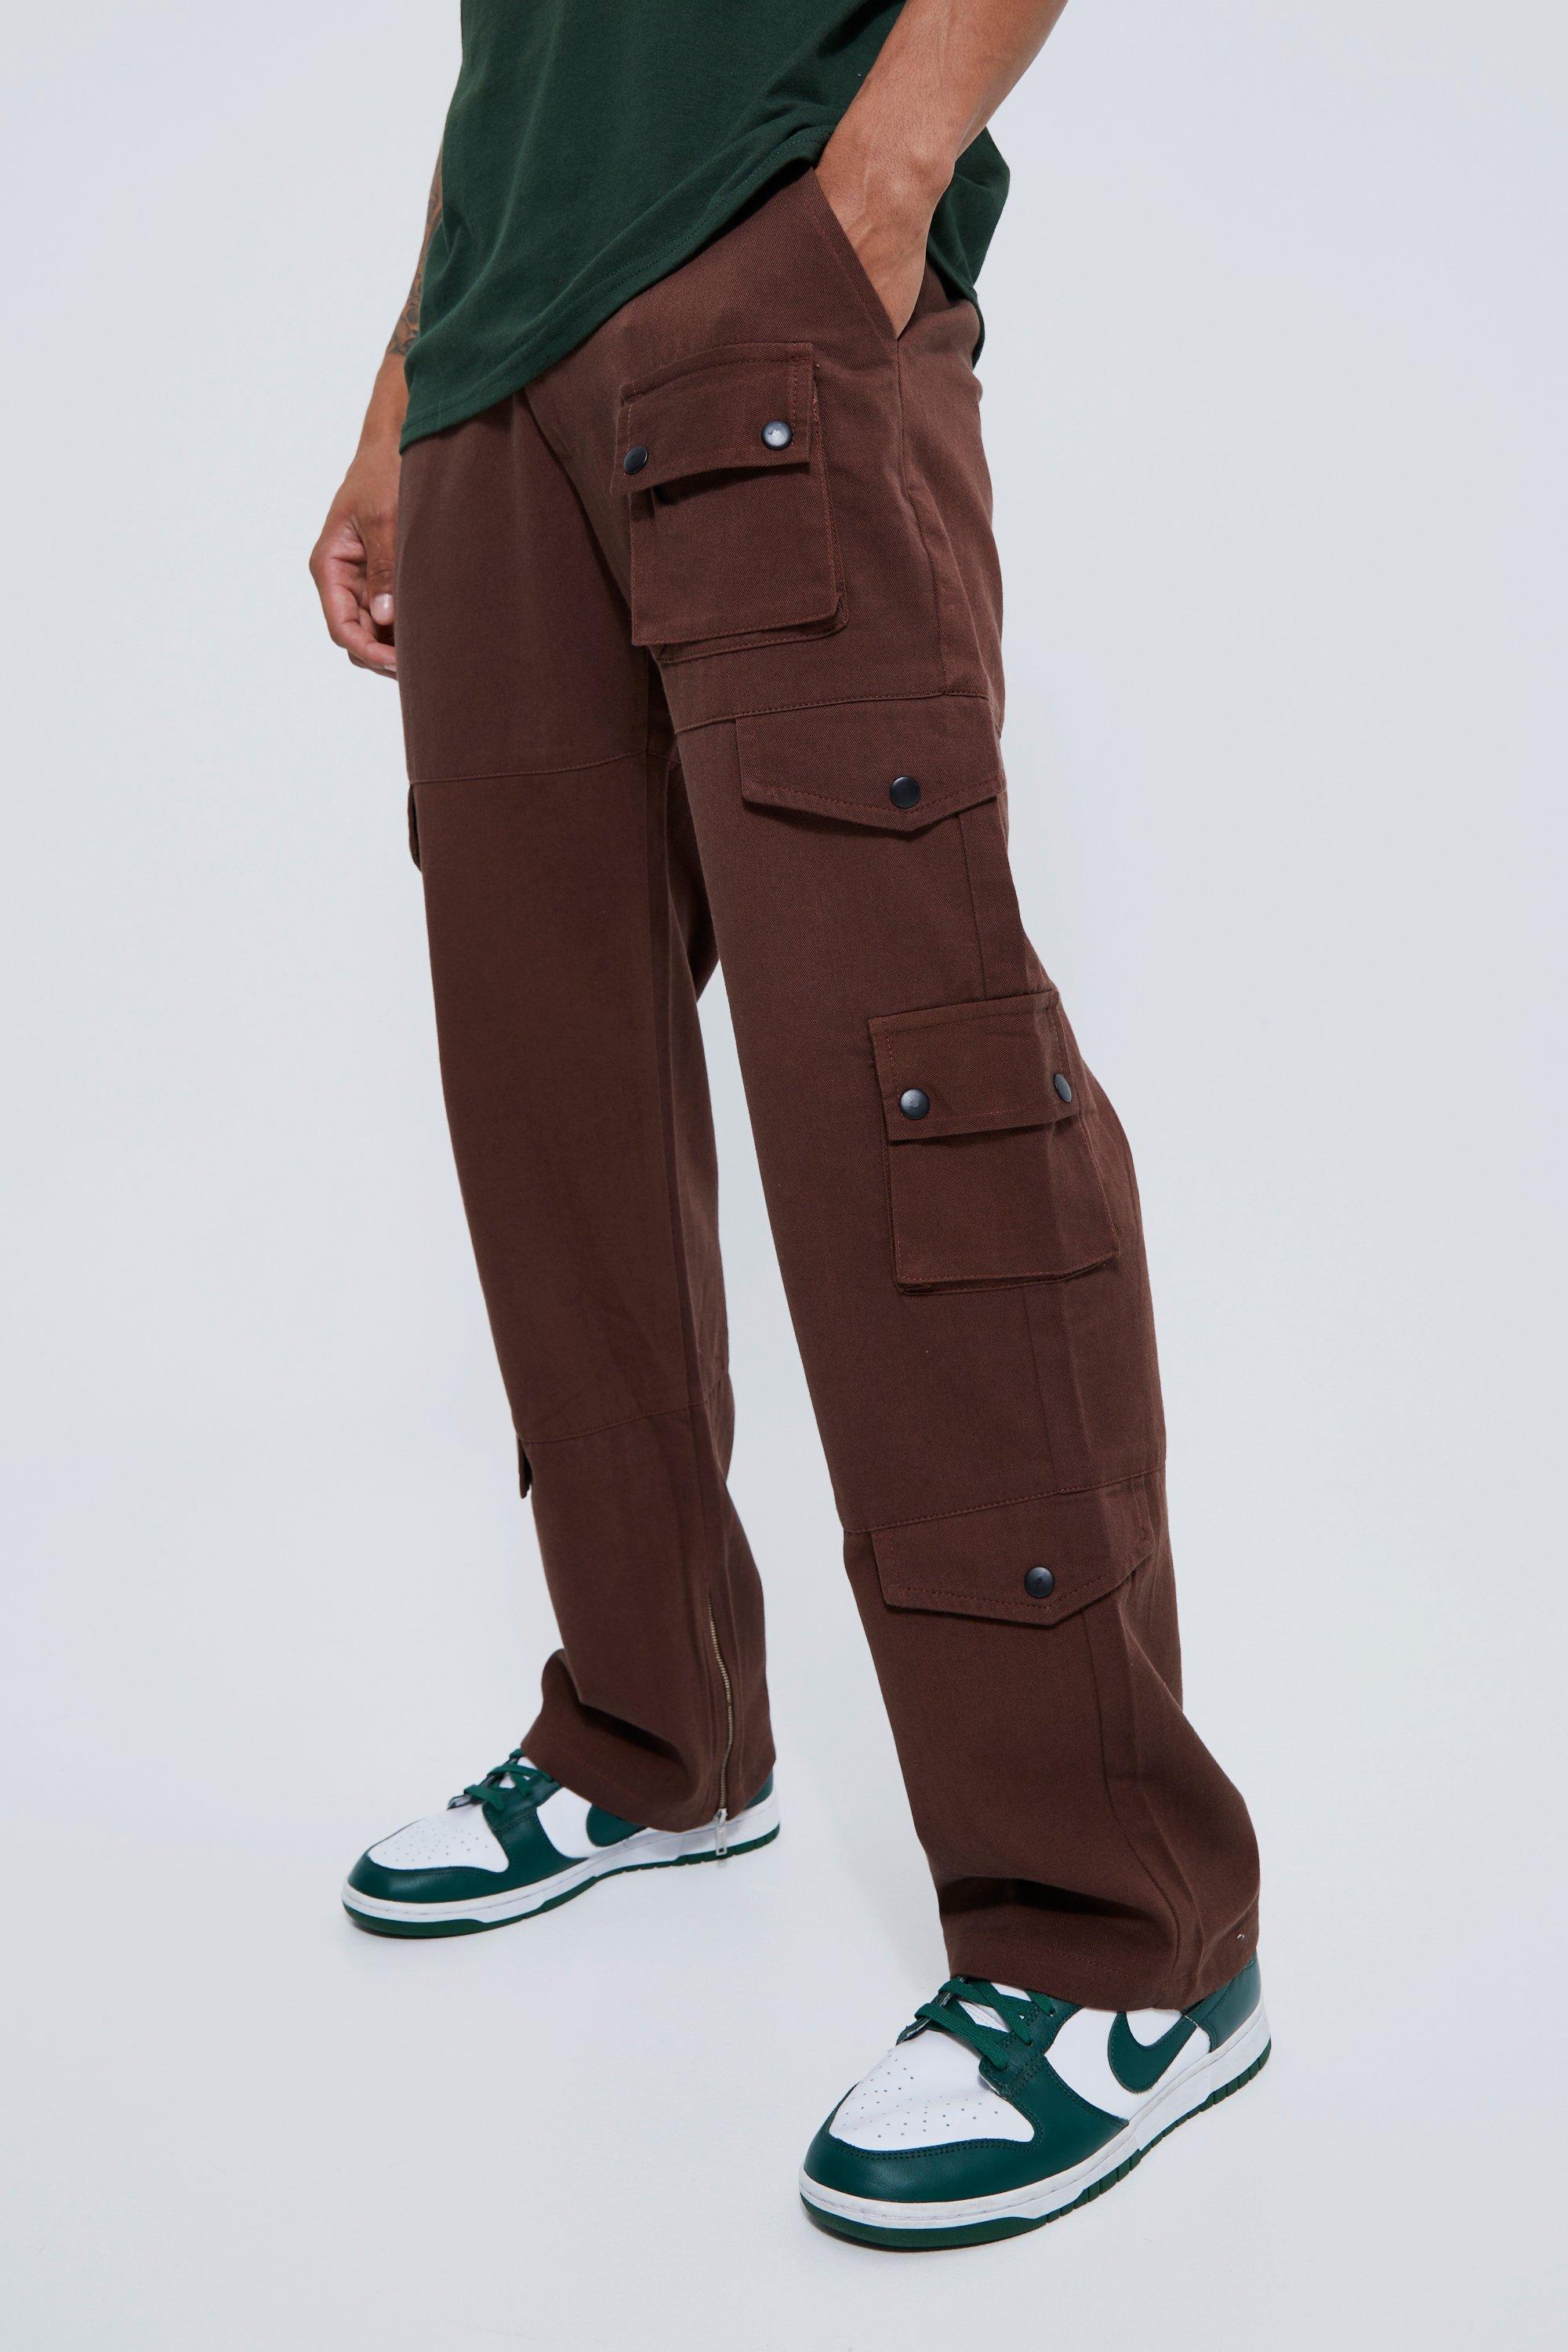 pantalon cargo décontracté homme - brun - 30r, brun